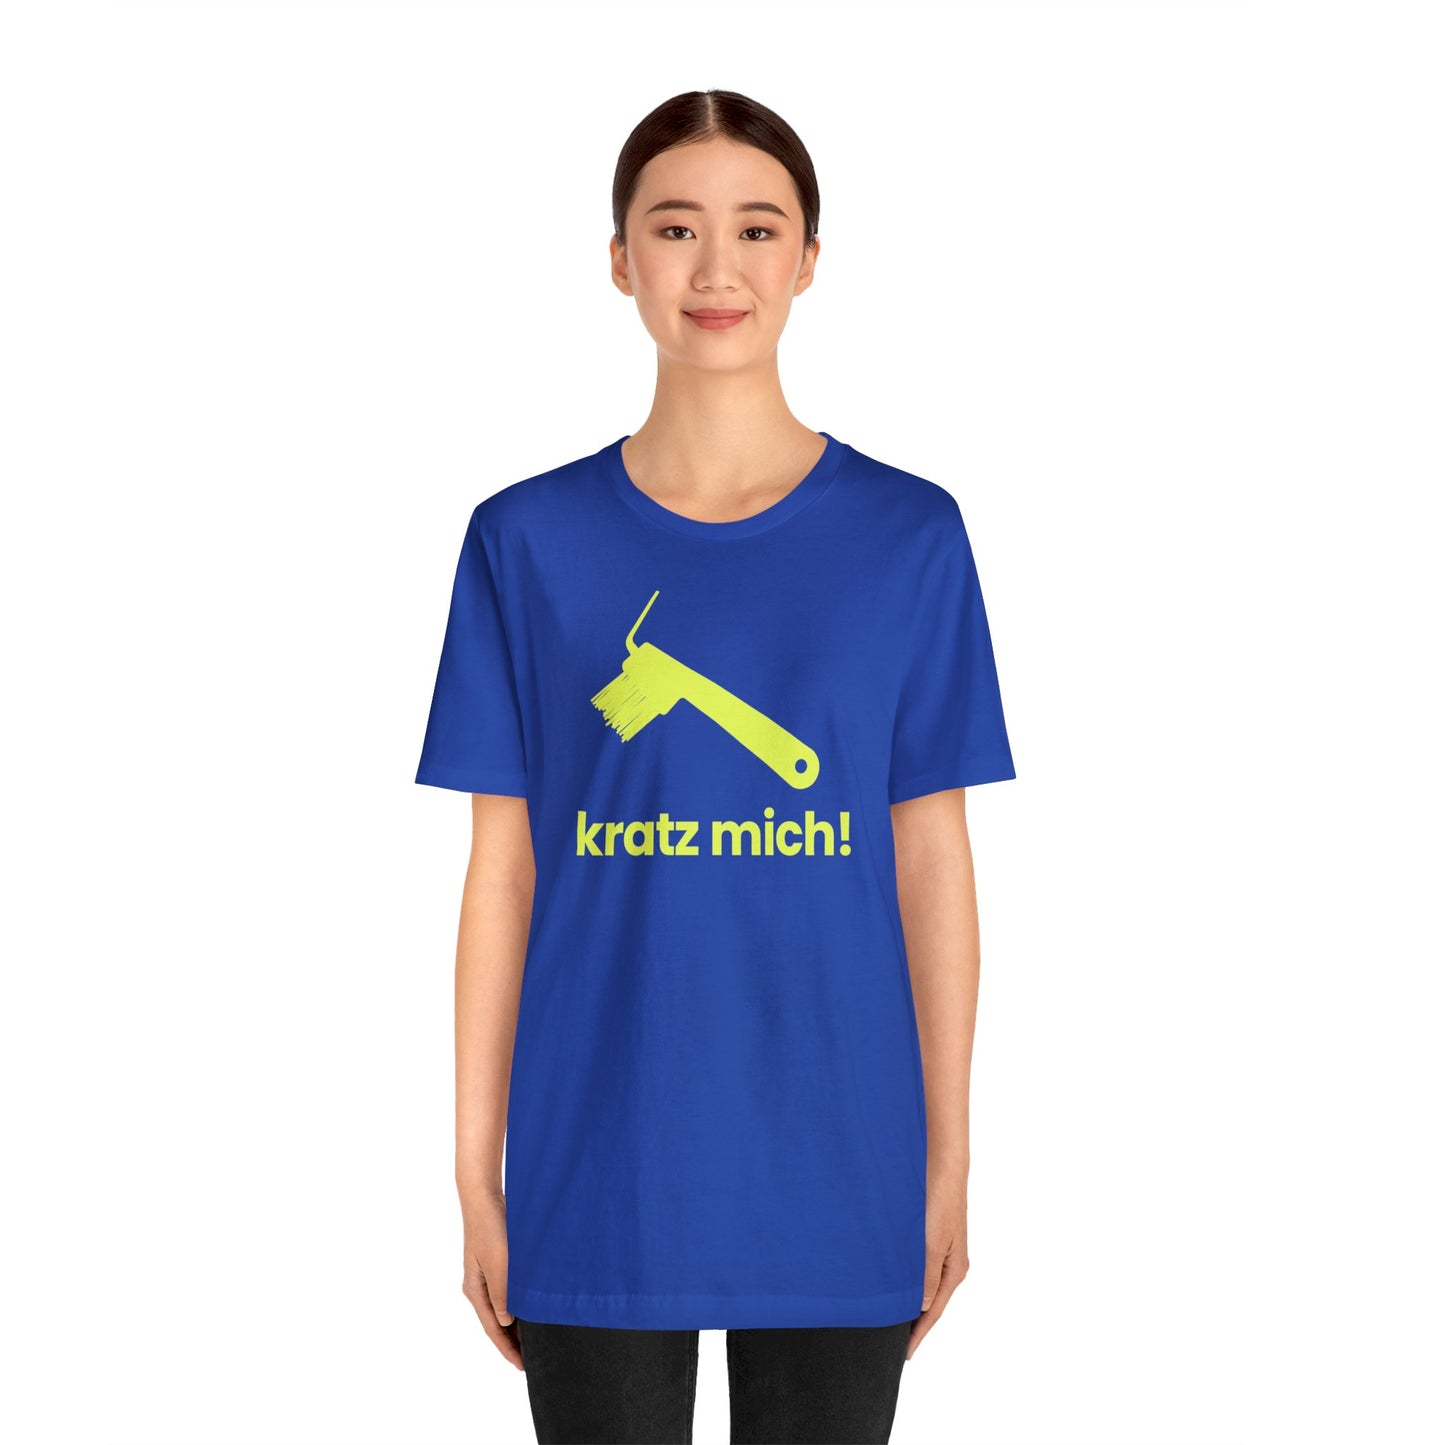 Kratz mich! – Unisex T-Shirt